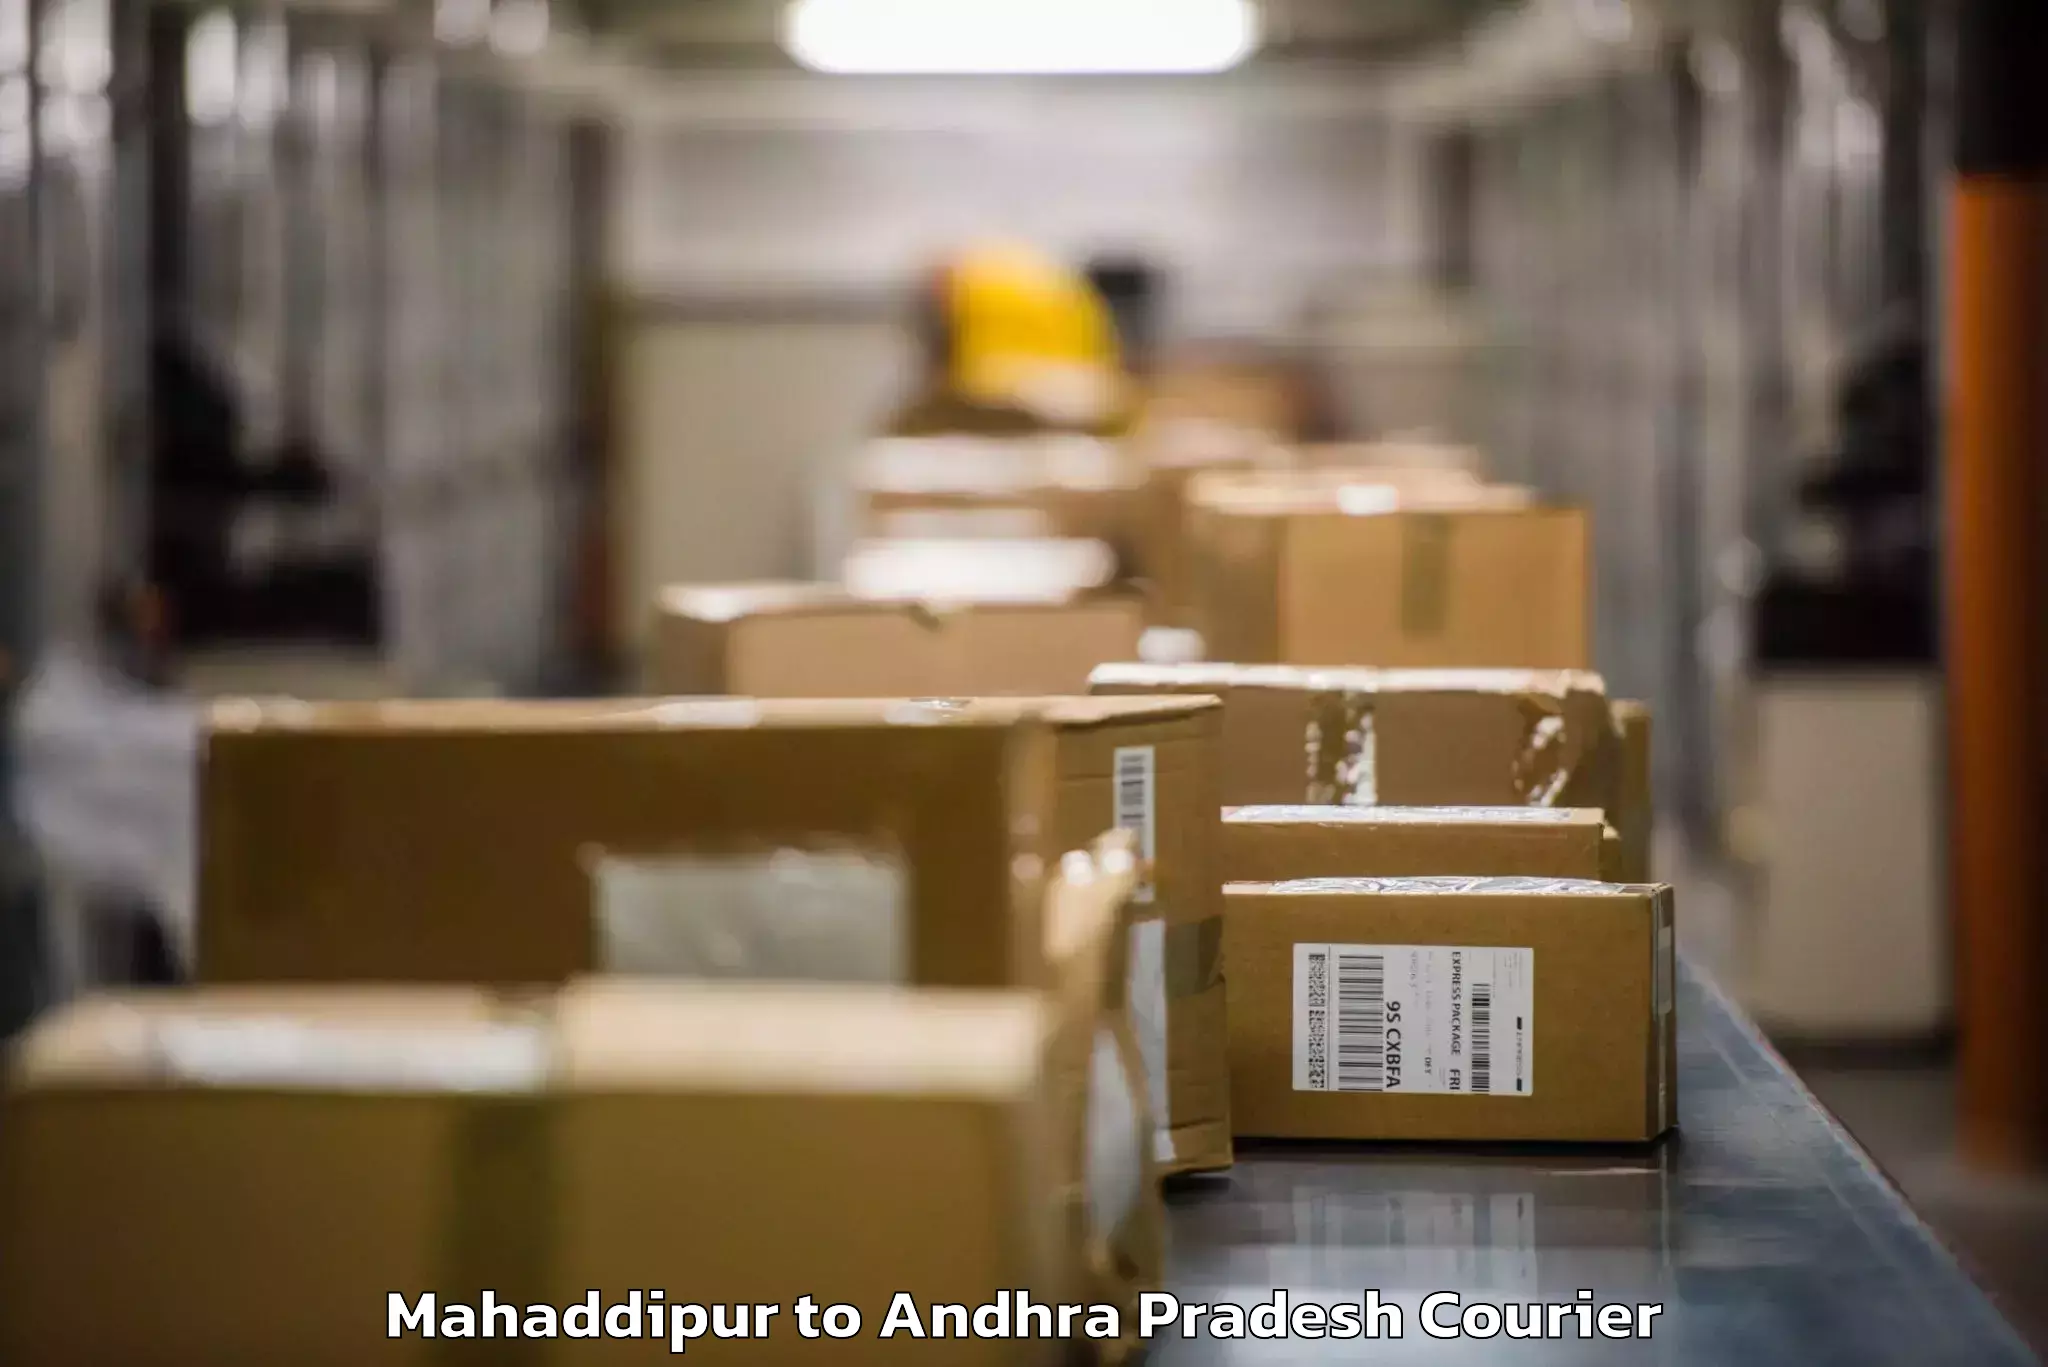 Automated luggage transport Mahaddipur to Etcherla